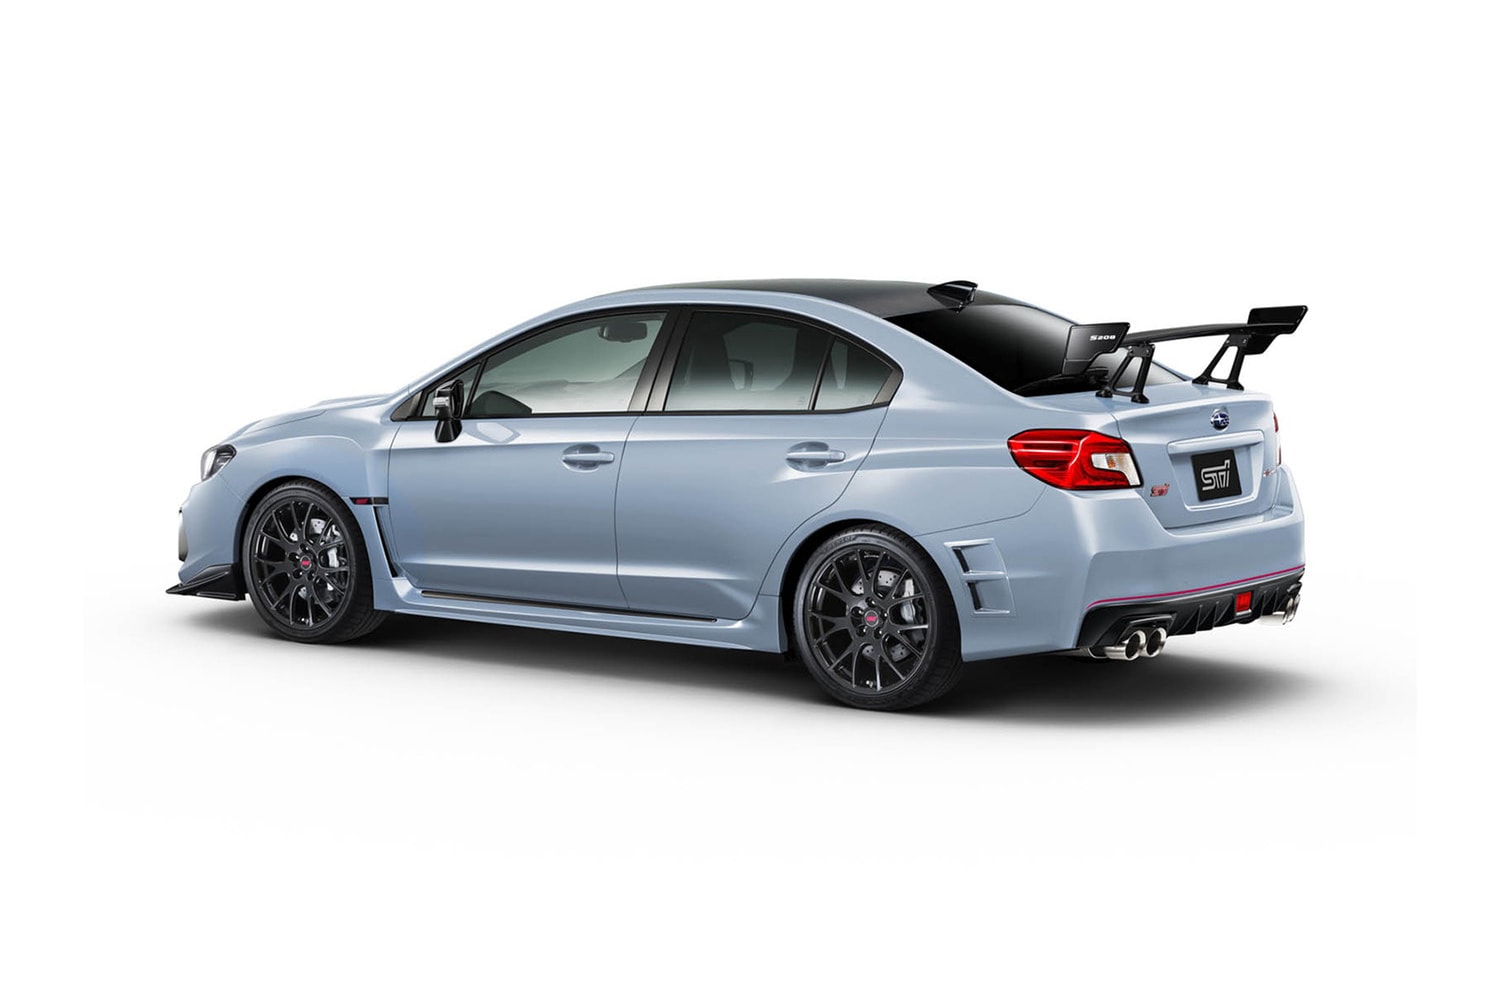 限量 450 台 - Subaru 發佈 WRX STI S208 運動轎跑